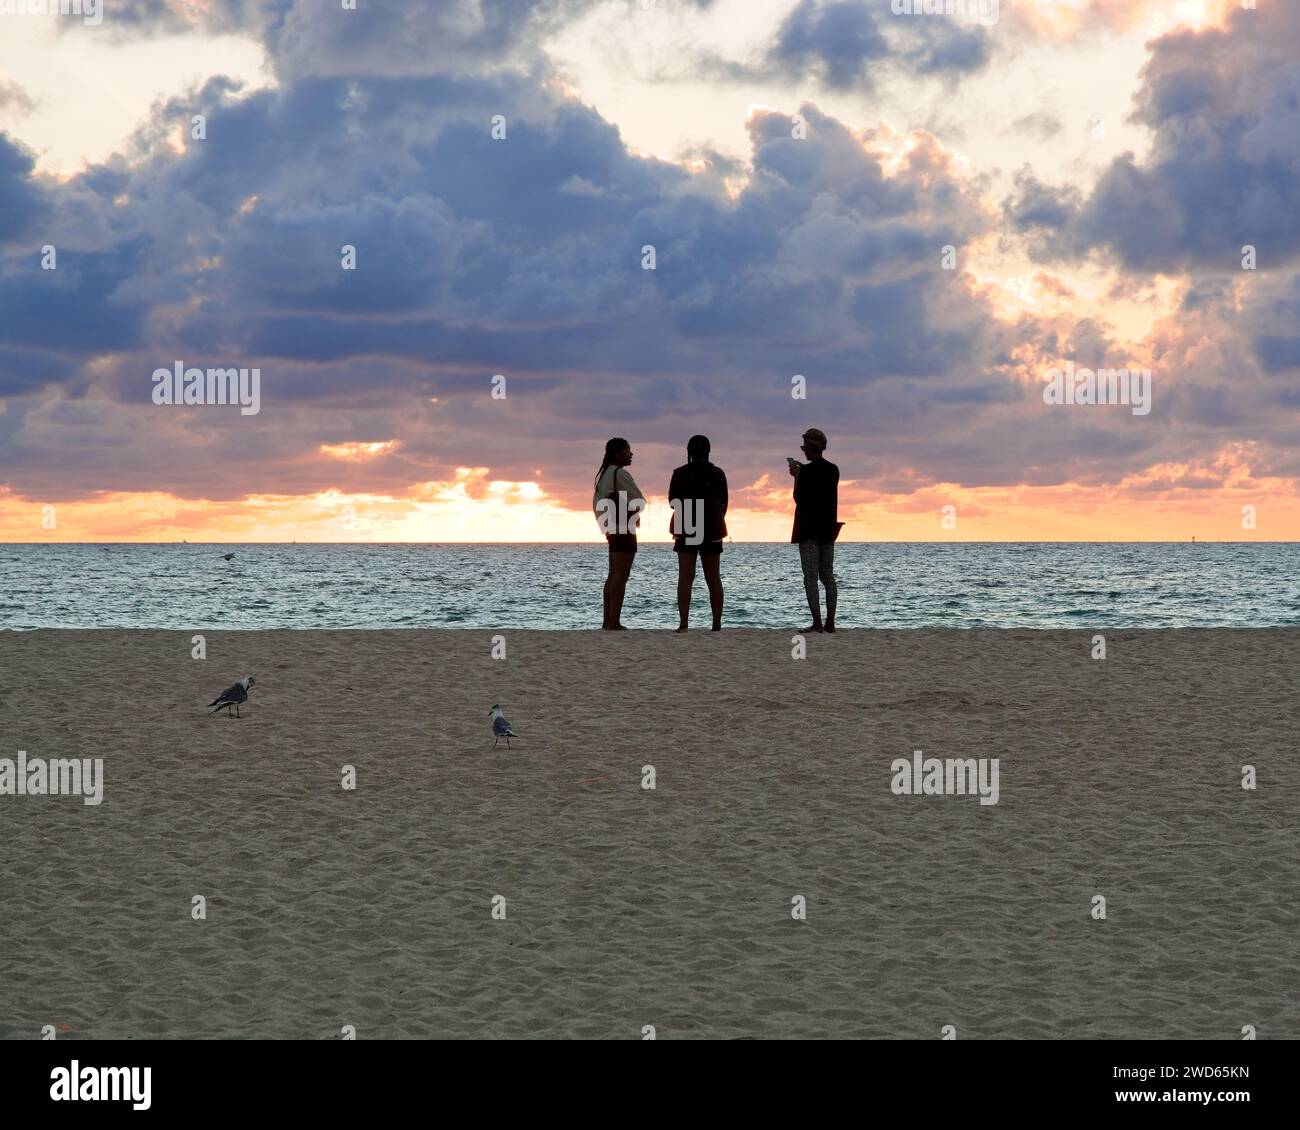 La silhouette dei primi alpinisti saluta la prima luce dell'alba sull'orizzonte orientale di South Beach a Miami Beach Foto Stock